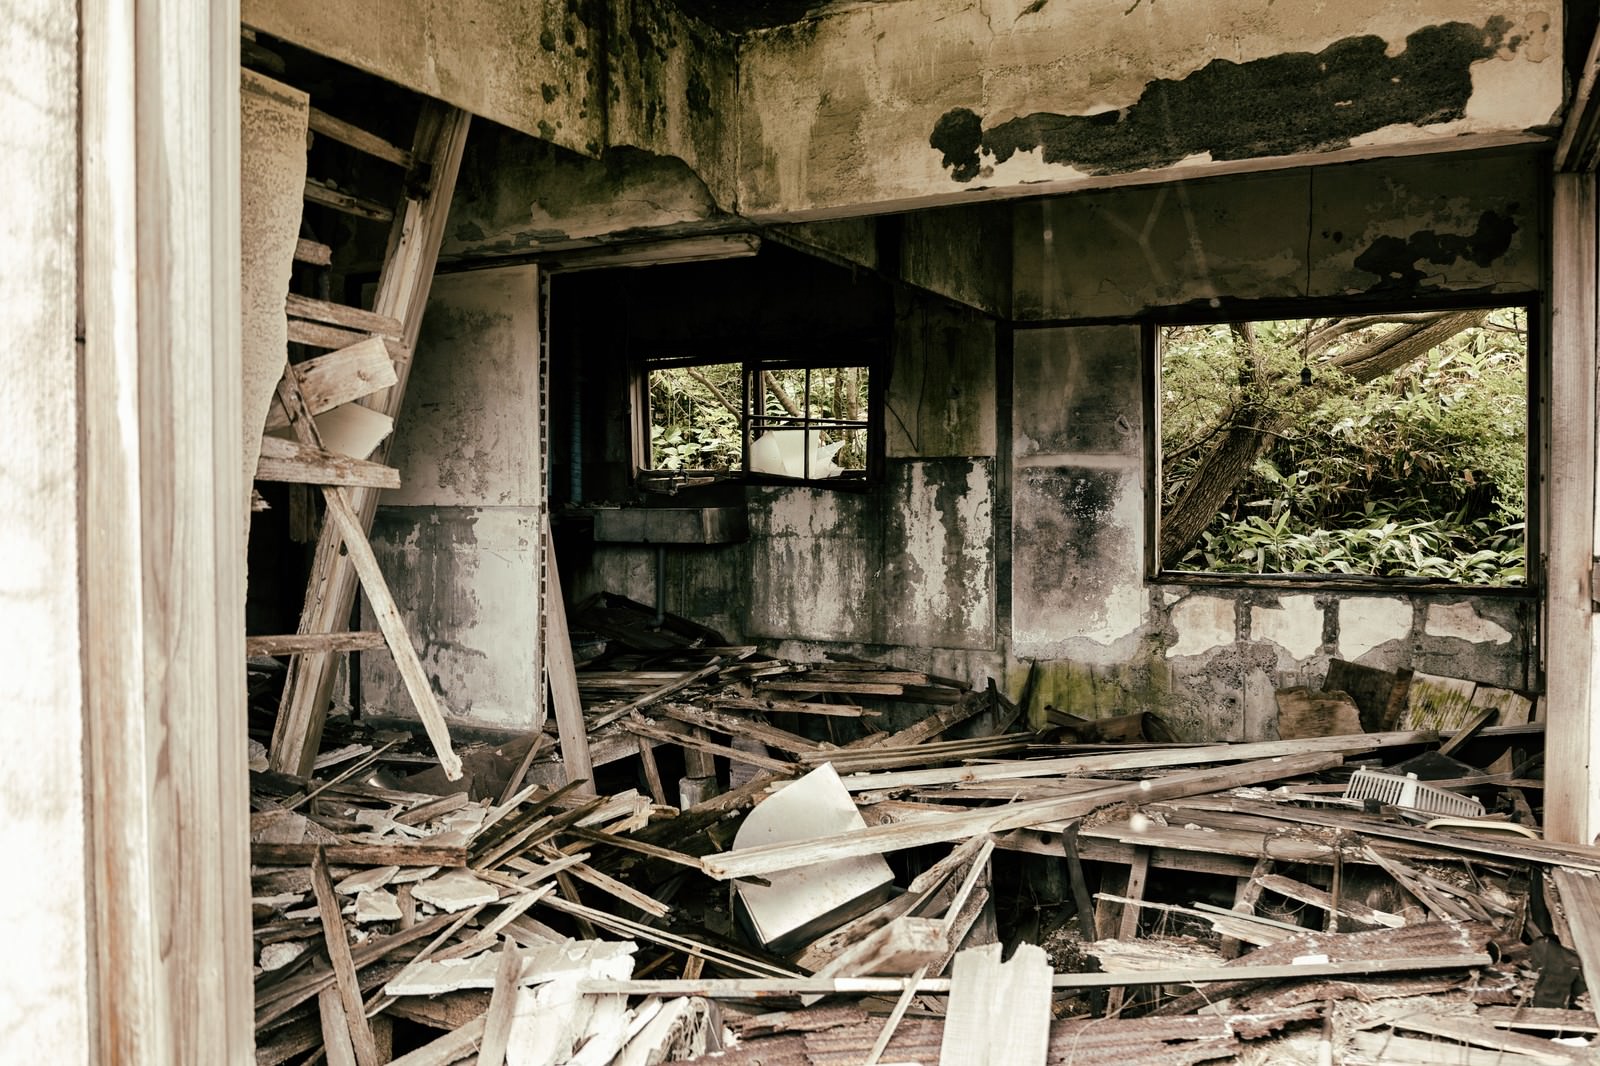 「床が抜けてボロボロの廃アパートの中 | フリー素材のぱくたそ」の写真